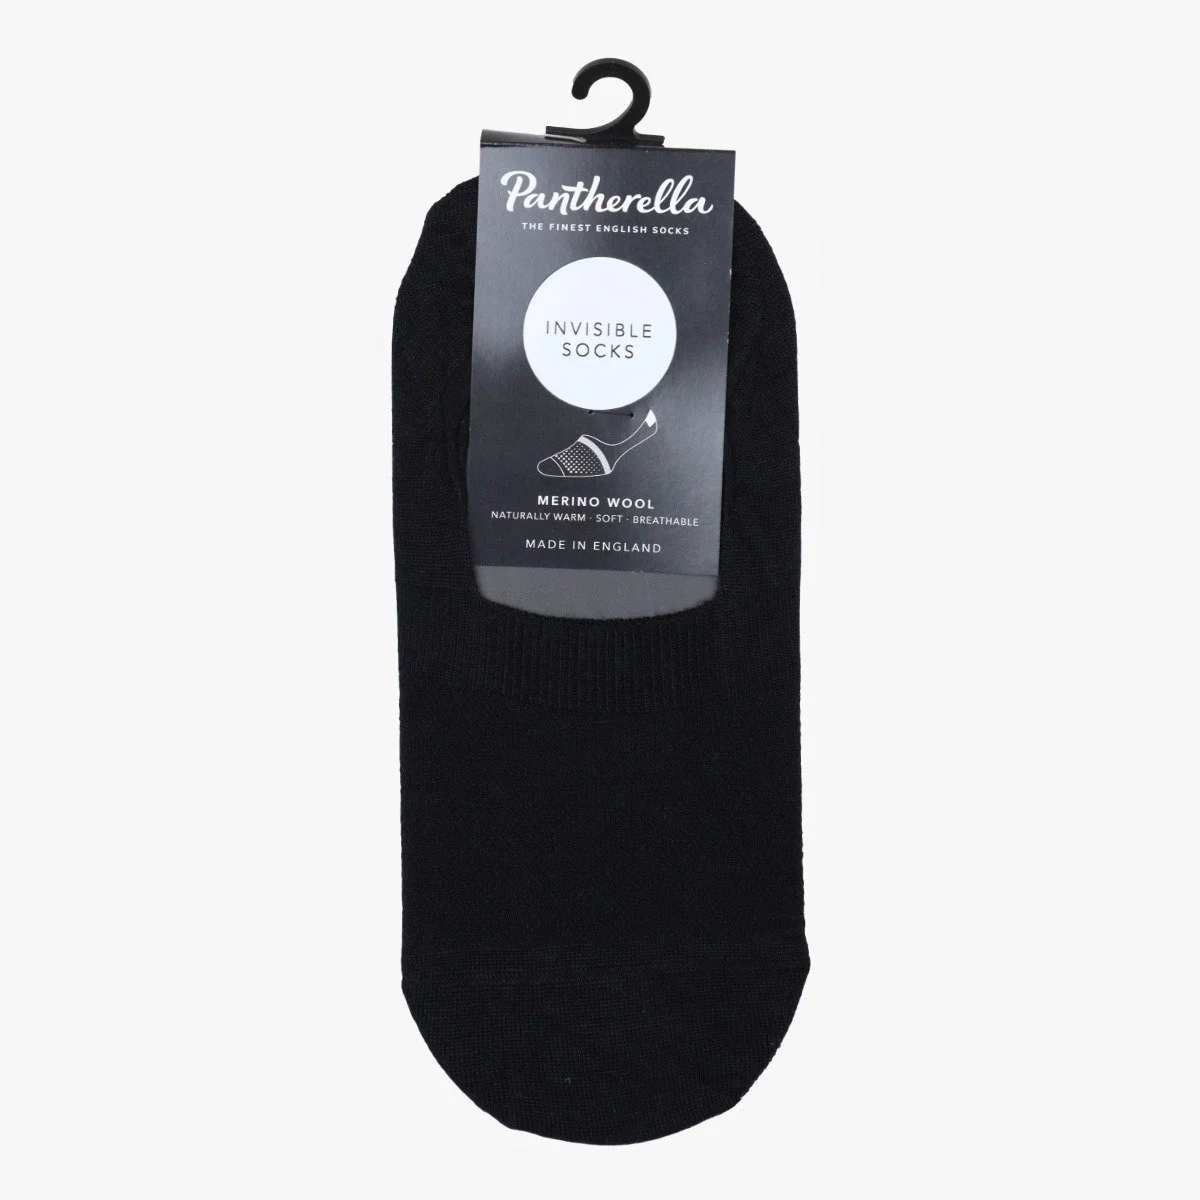 Pantherella Mahon black merino wool invisible socks